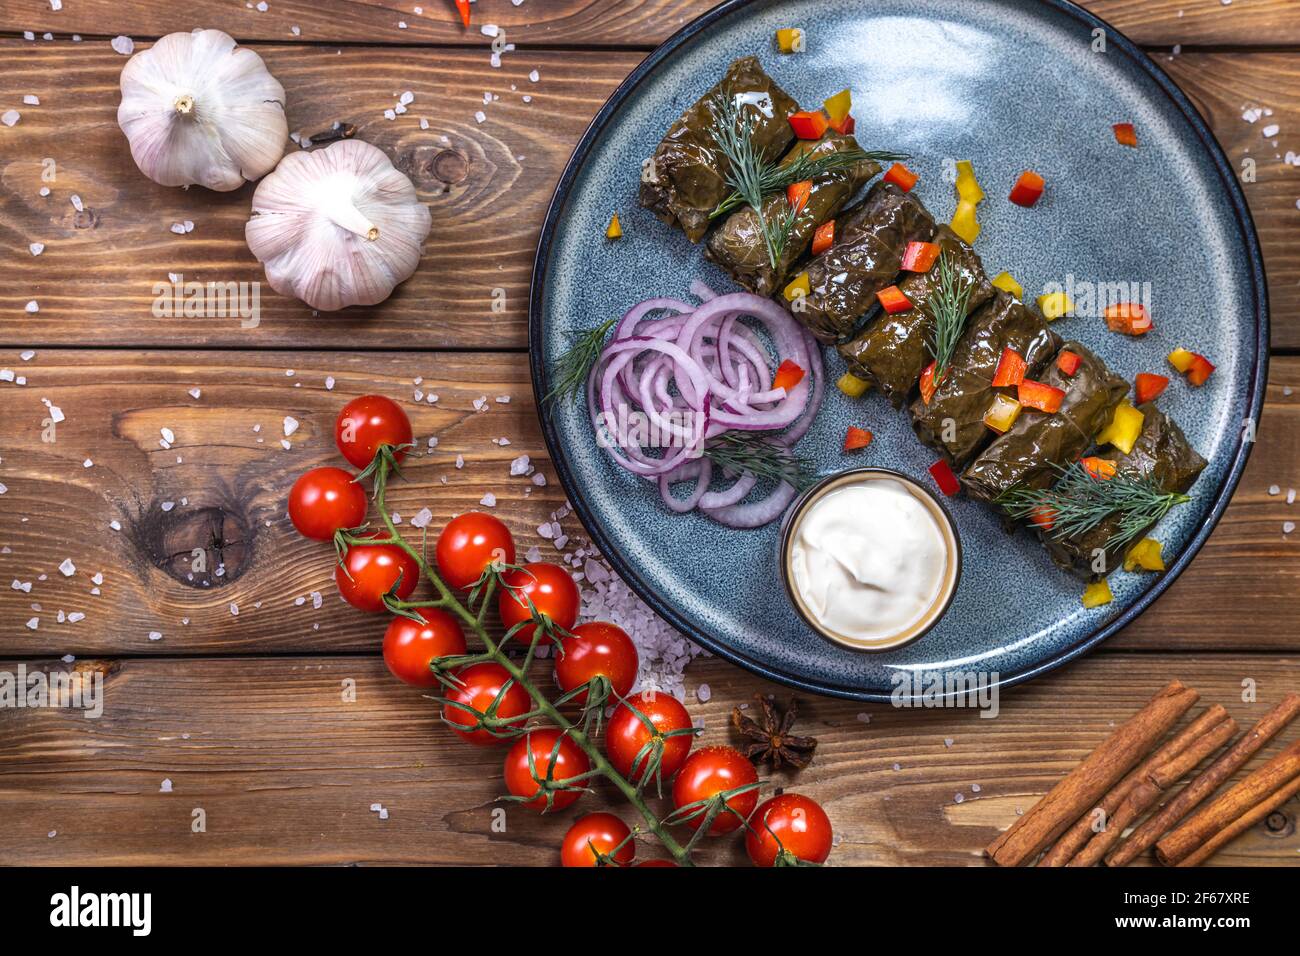 Dolma in foglie d'uva su un piatto su fondo di legno marrone, decorato con spezie, peperoncini, pomodori ciliegini. Un piatto del menu del ristorante. Foto Stock